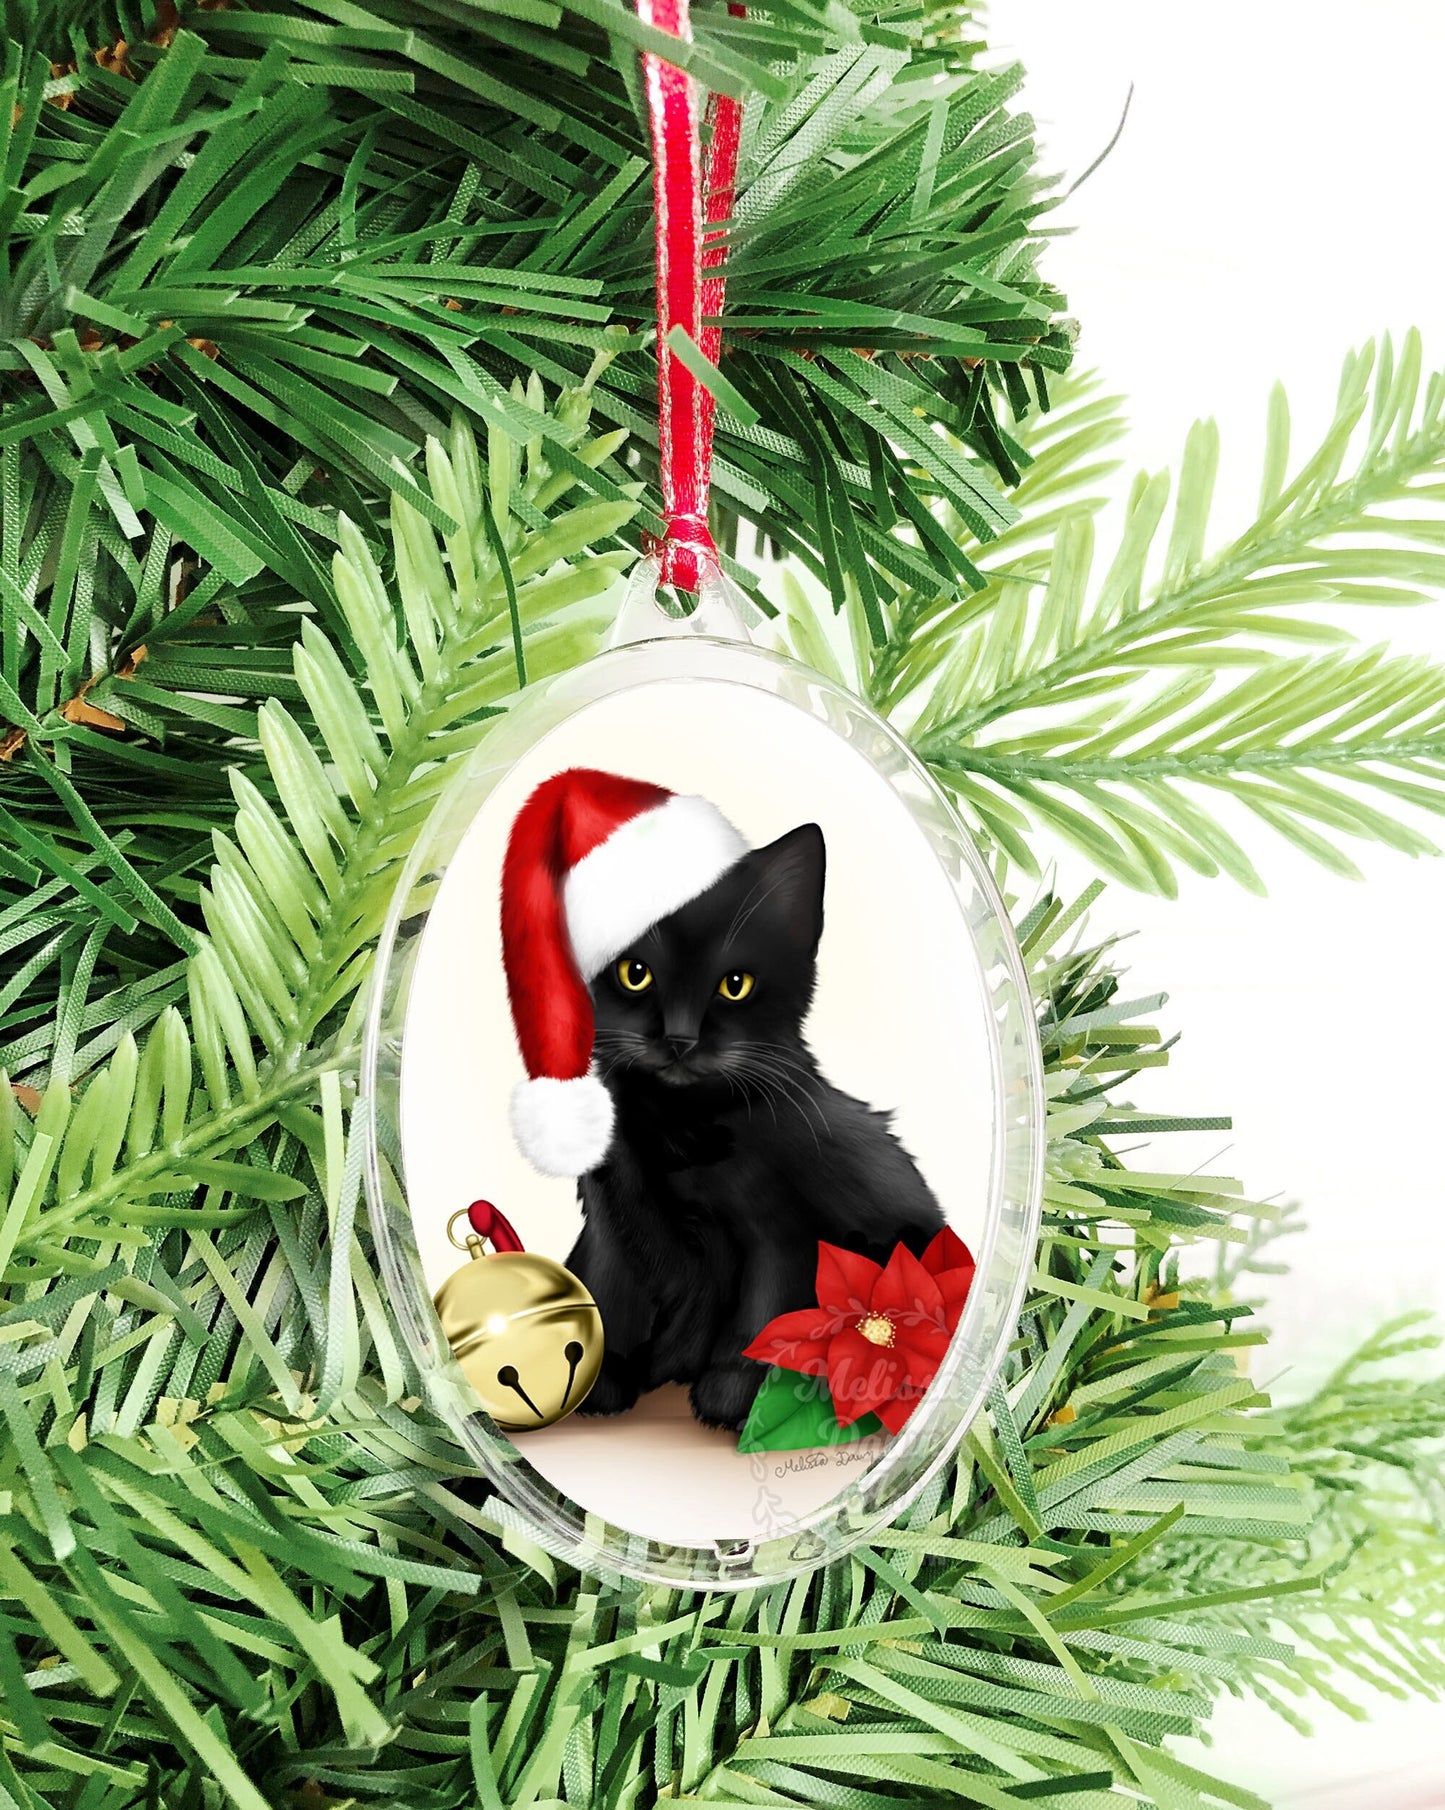 Black Cat Ornament / Custom Cat Ornament / Cat Christmas Ornament / Personalized Cat Ornament / Black Kitten Ornament / Santa Cat / Santa